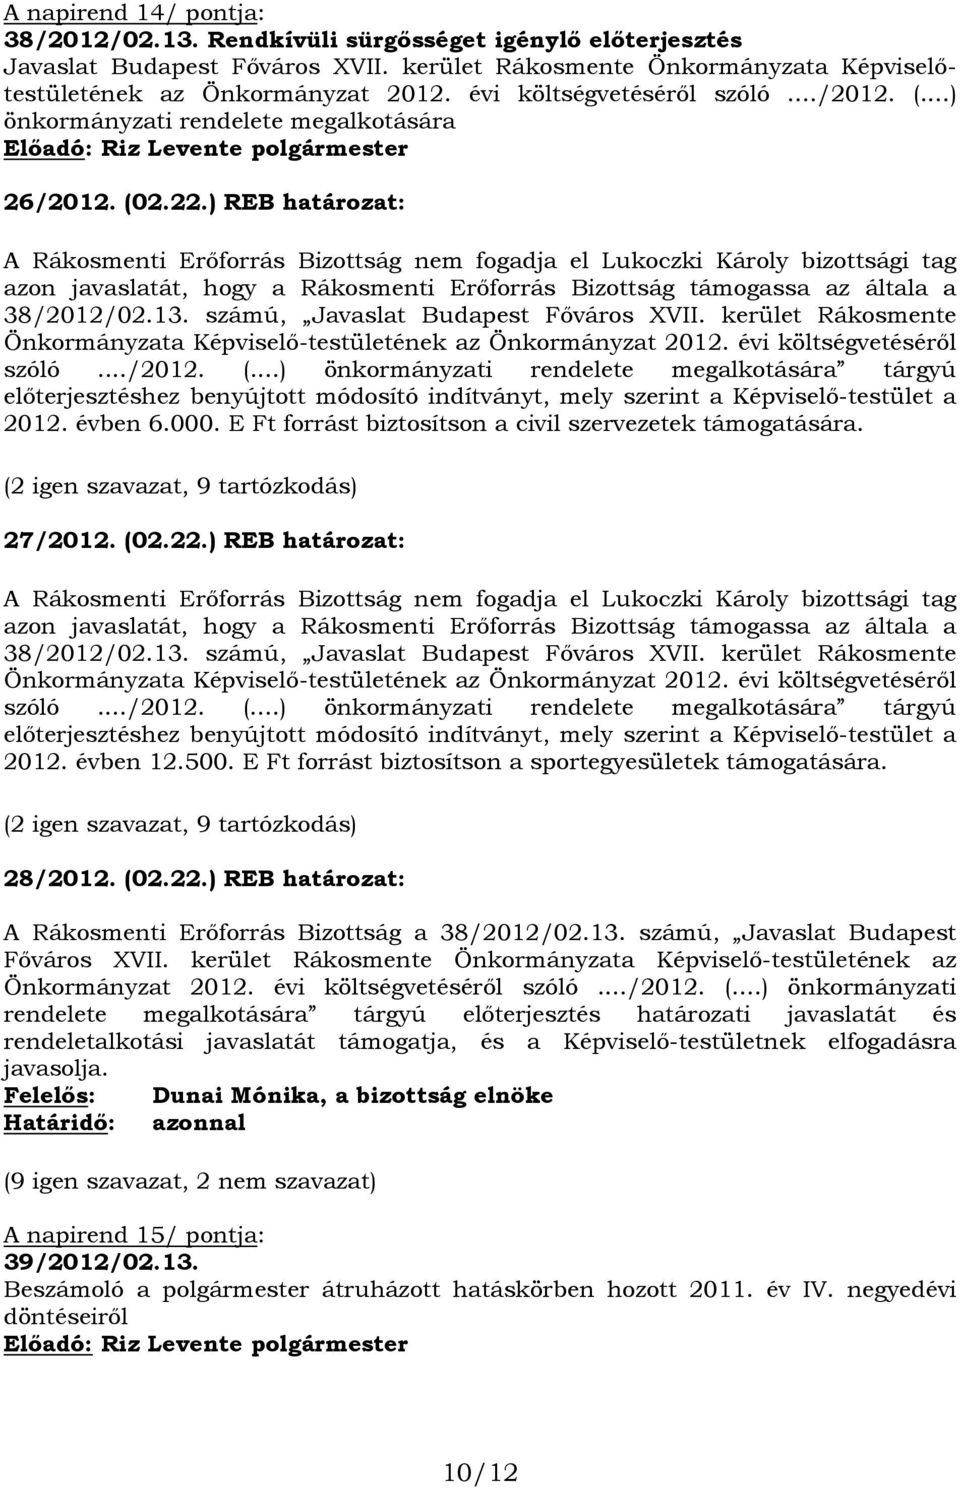 ) REB határozat: A Rákosmenti Erőforrás Bizottság nem fogadja el Lukoczki Károly bizottsági tag azon javaslatát, hogy a Rákosmenti Erőforrás Bizottság támogassa az általa a 38/2012/02.13.